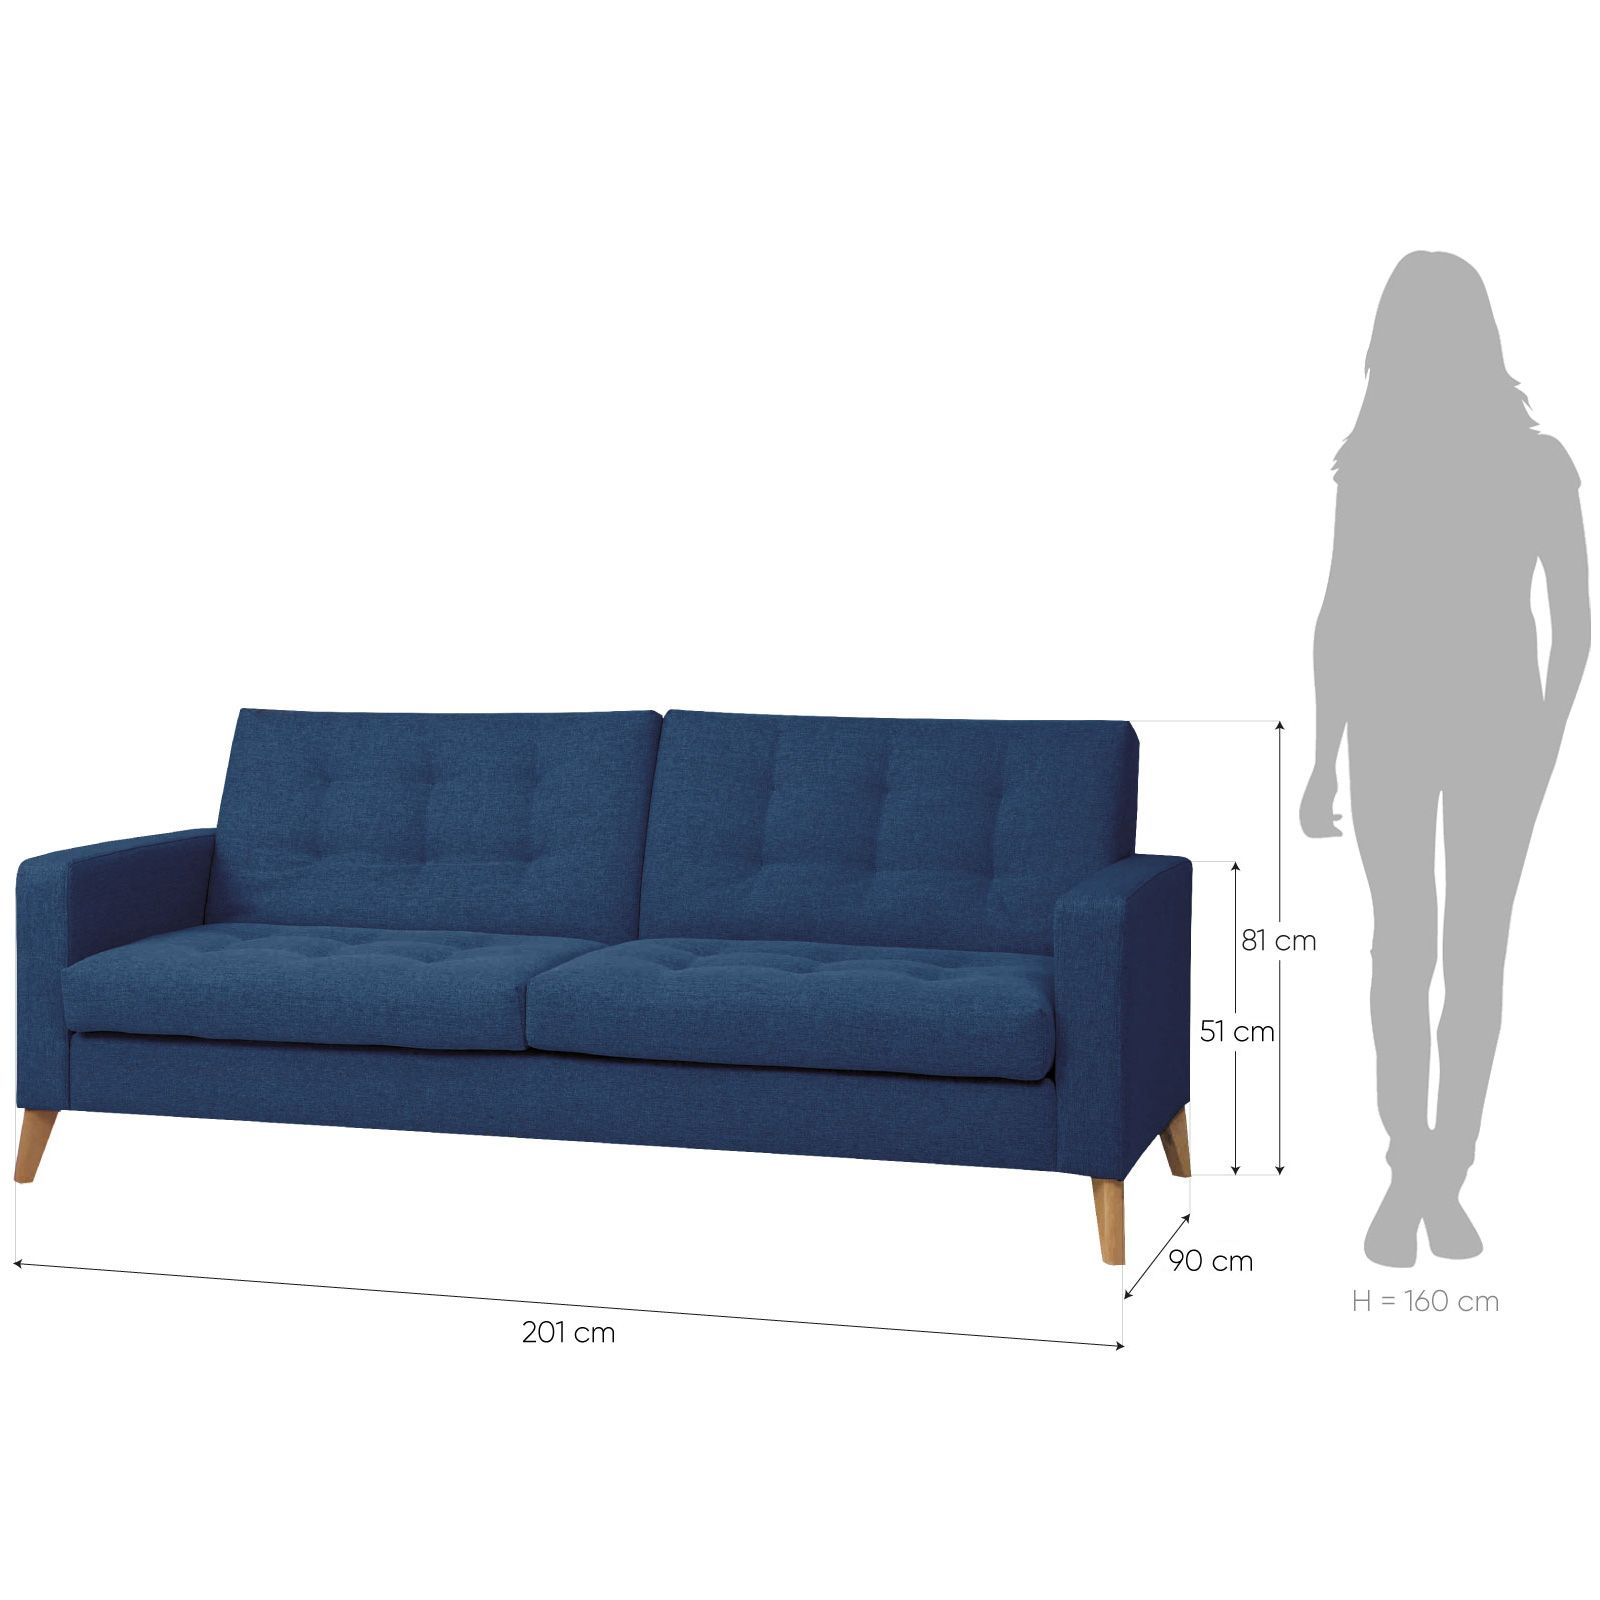 AZURRE | Sofá cama tapizado en azul oceáno (201 x 90 x 81 cm)